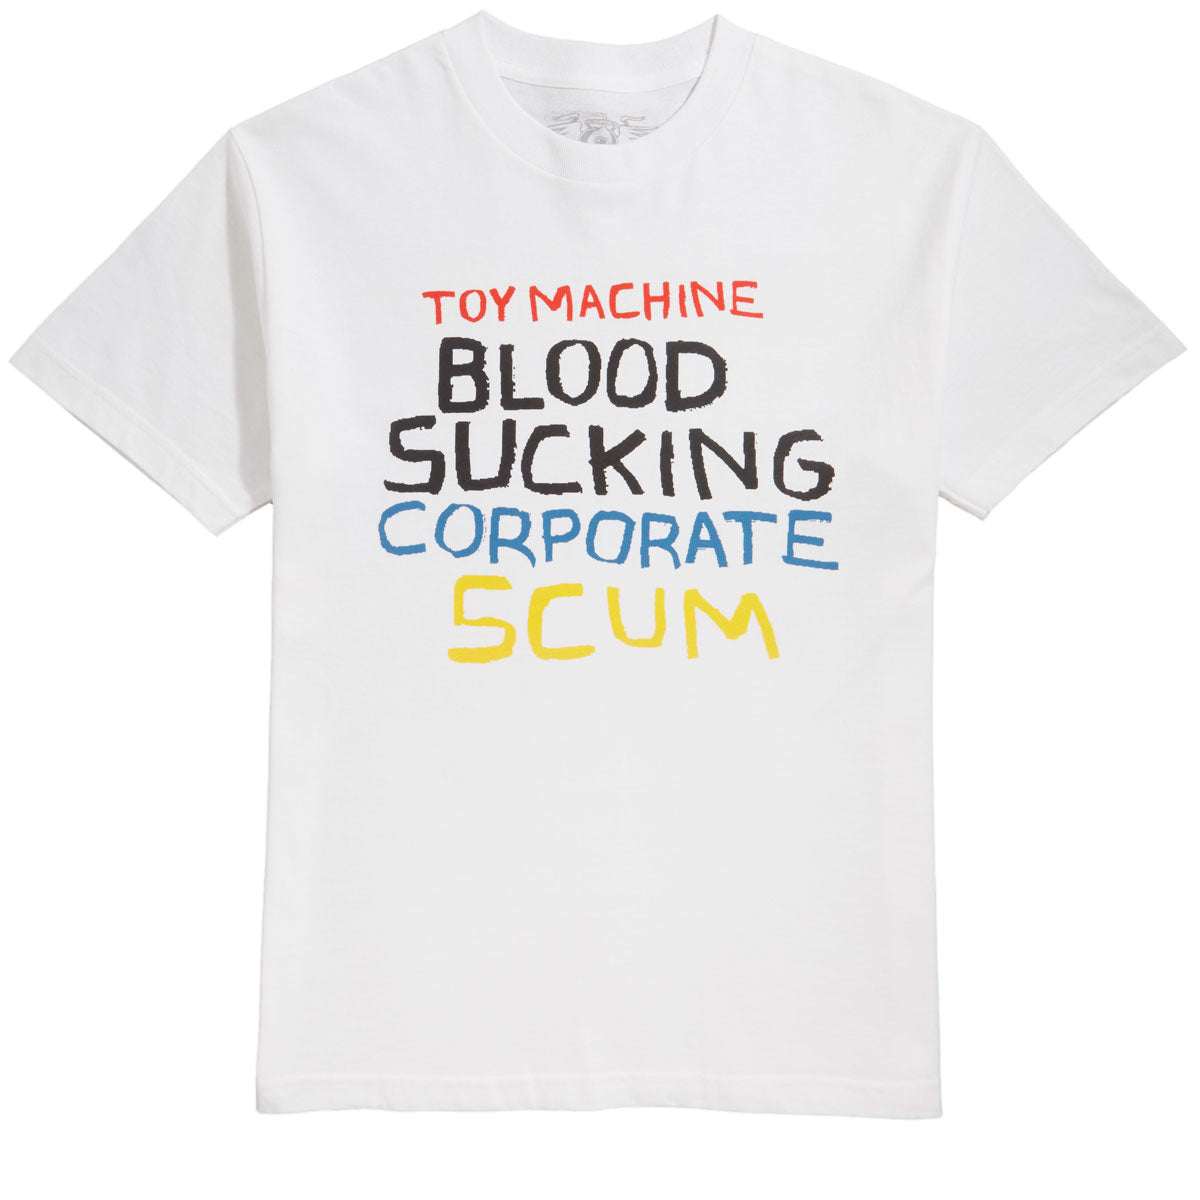 Toy Machine Bloodsucking Scum T-Shirt - White image 1